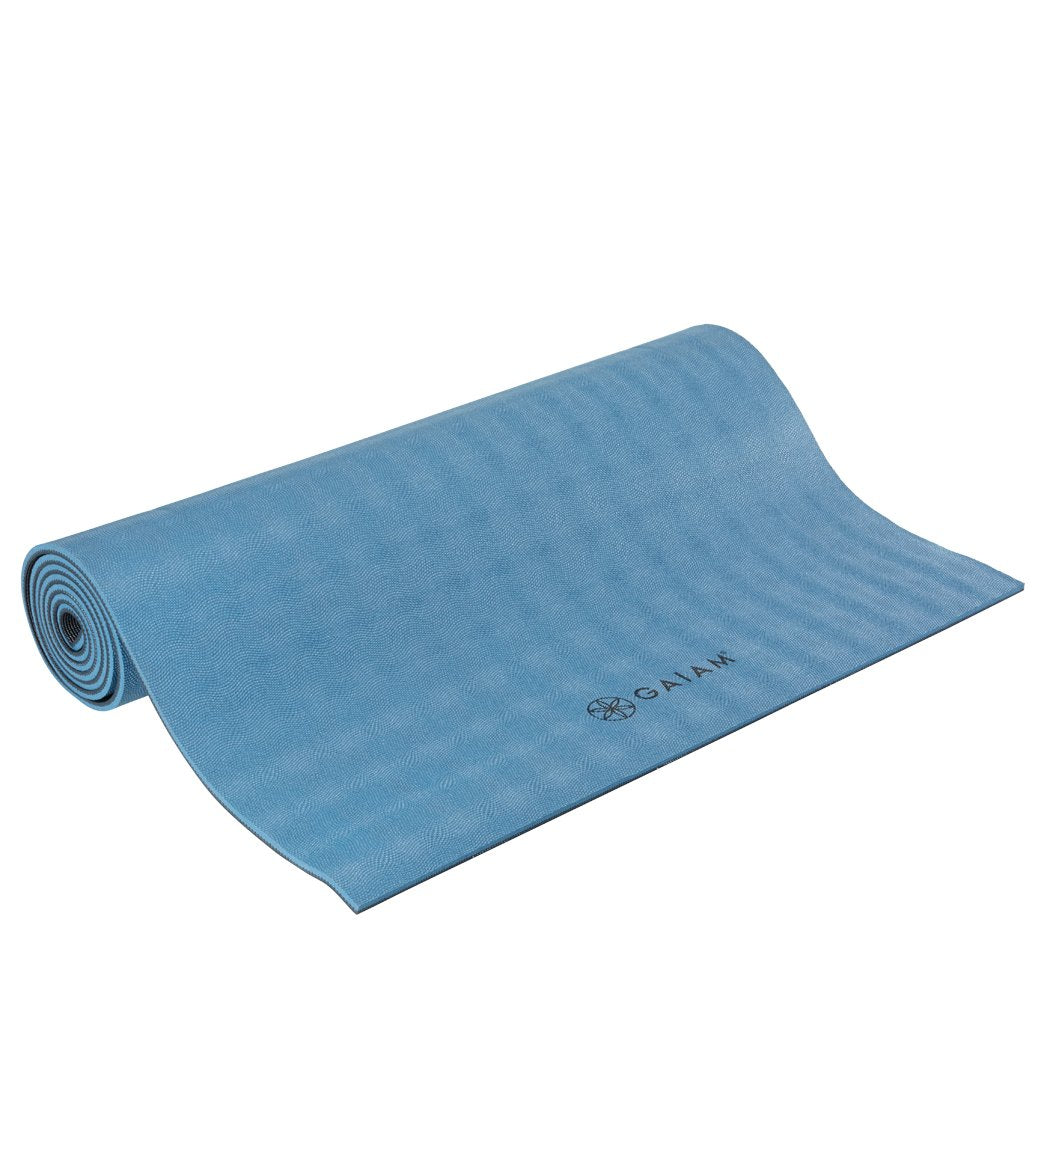 Gaiam Yoga Mat - Premium 5mm Dry-Grip Extra Long Thick Non Slip